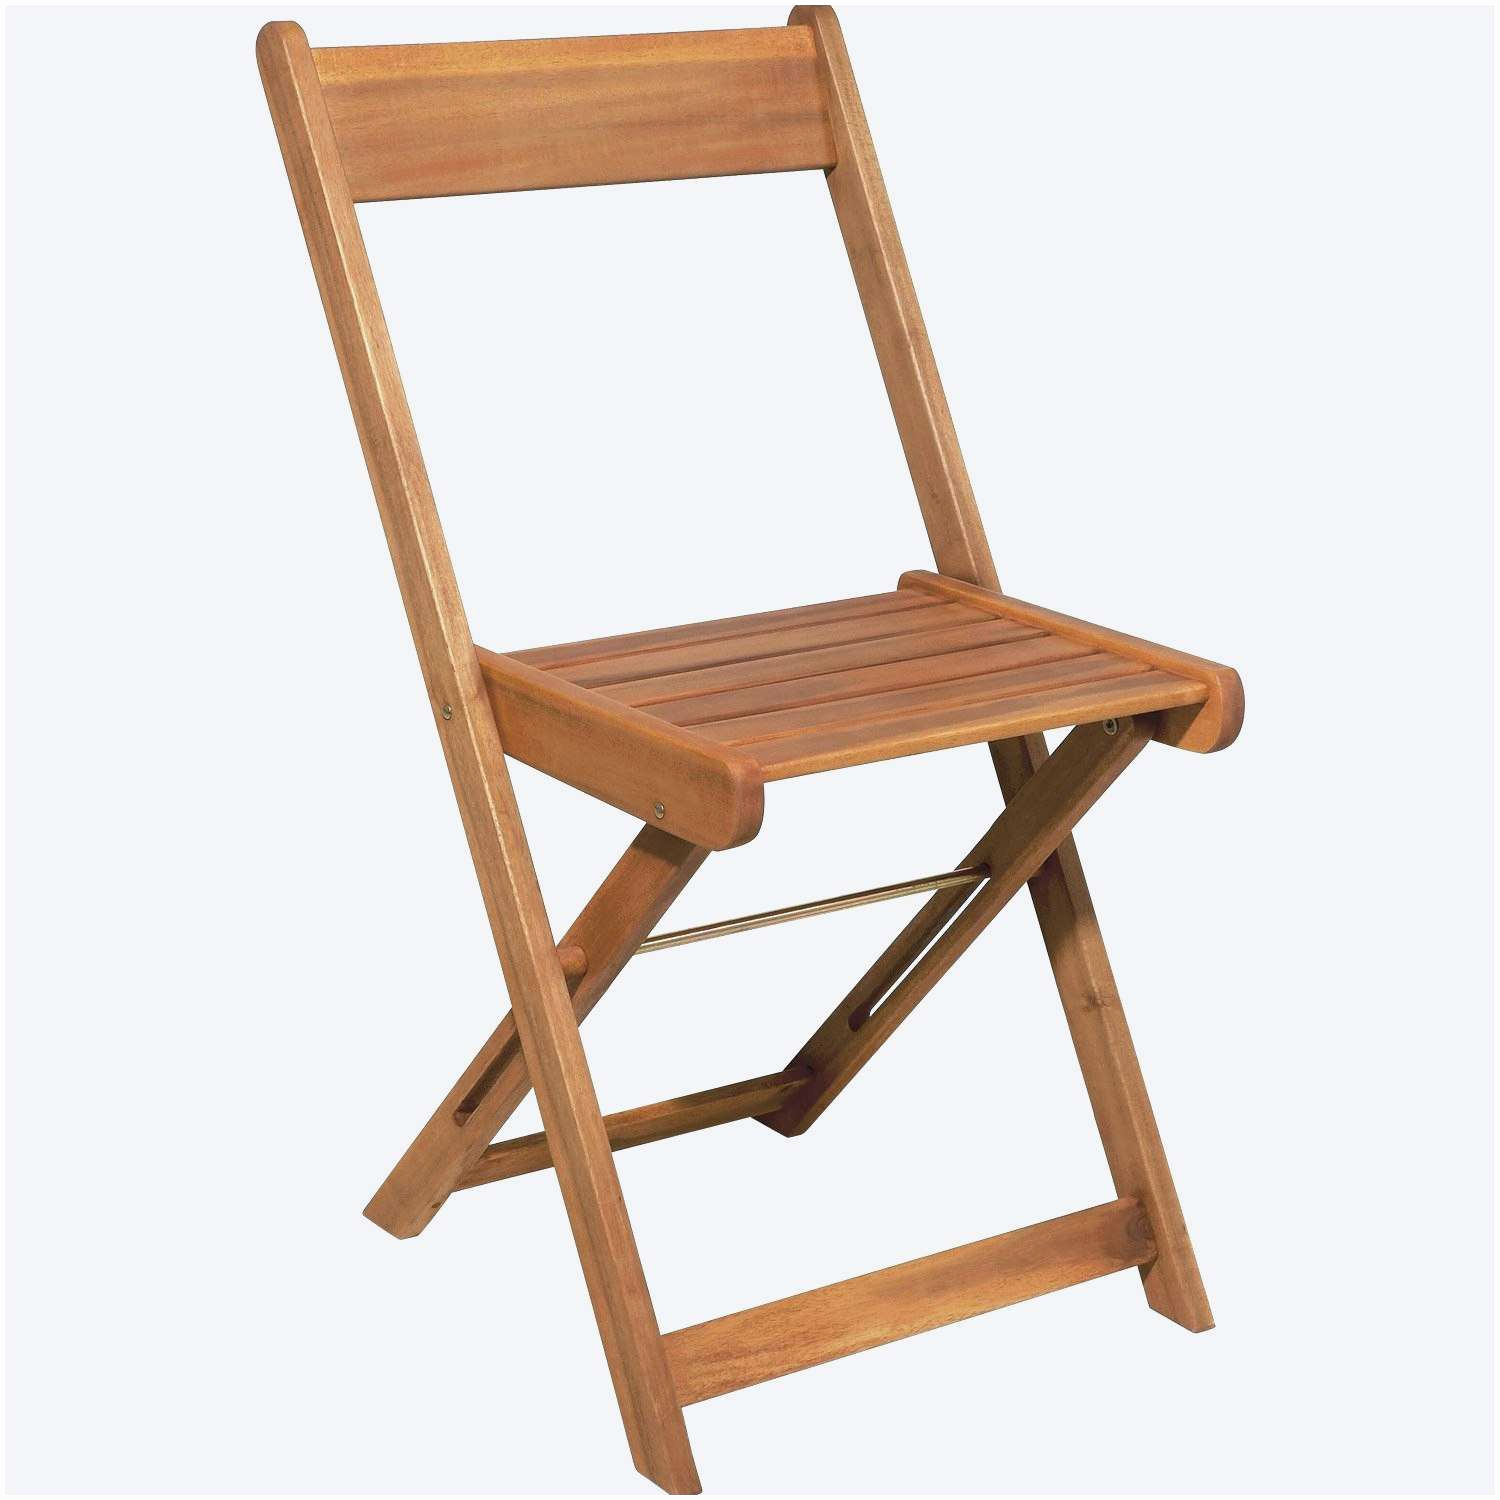 chaise scandinave i unique le meilleur de 39 propre galette de chaise i galette de chaise of chaise scandinave i